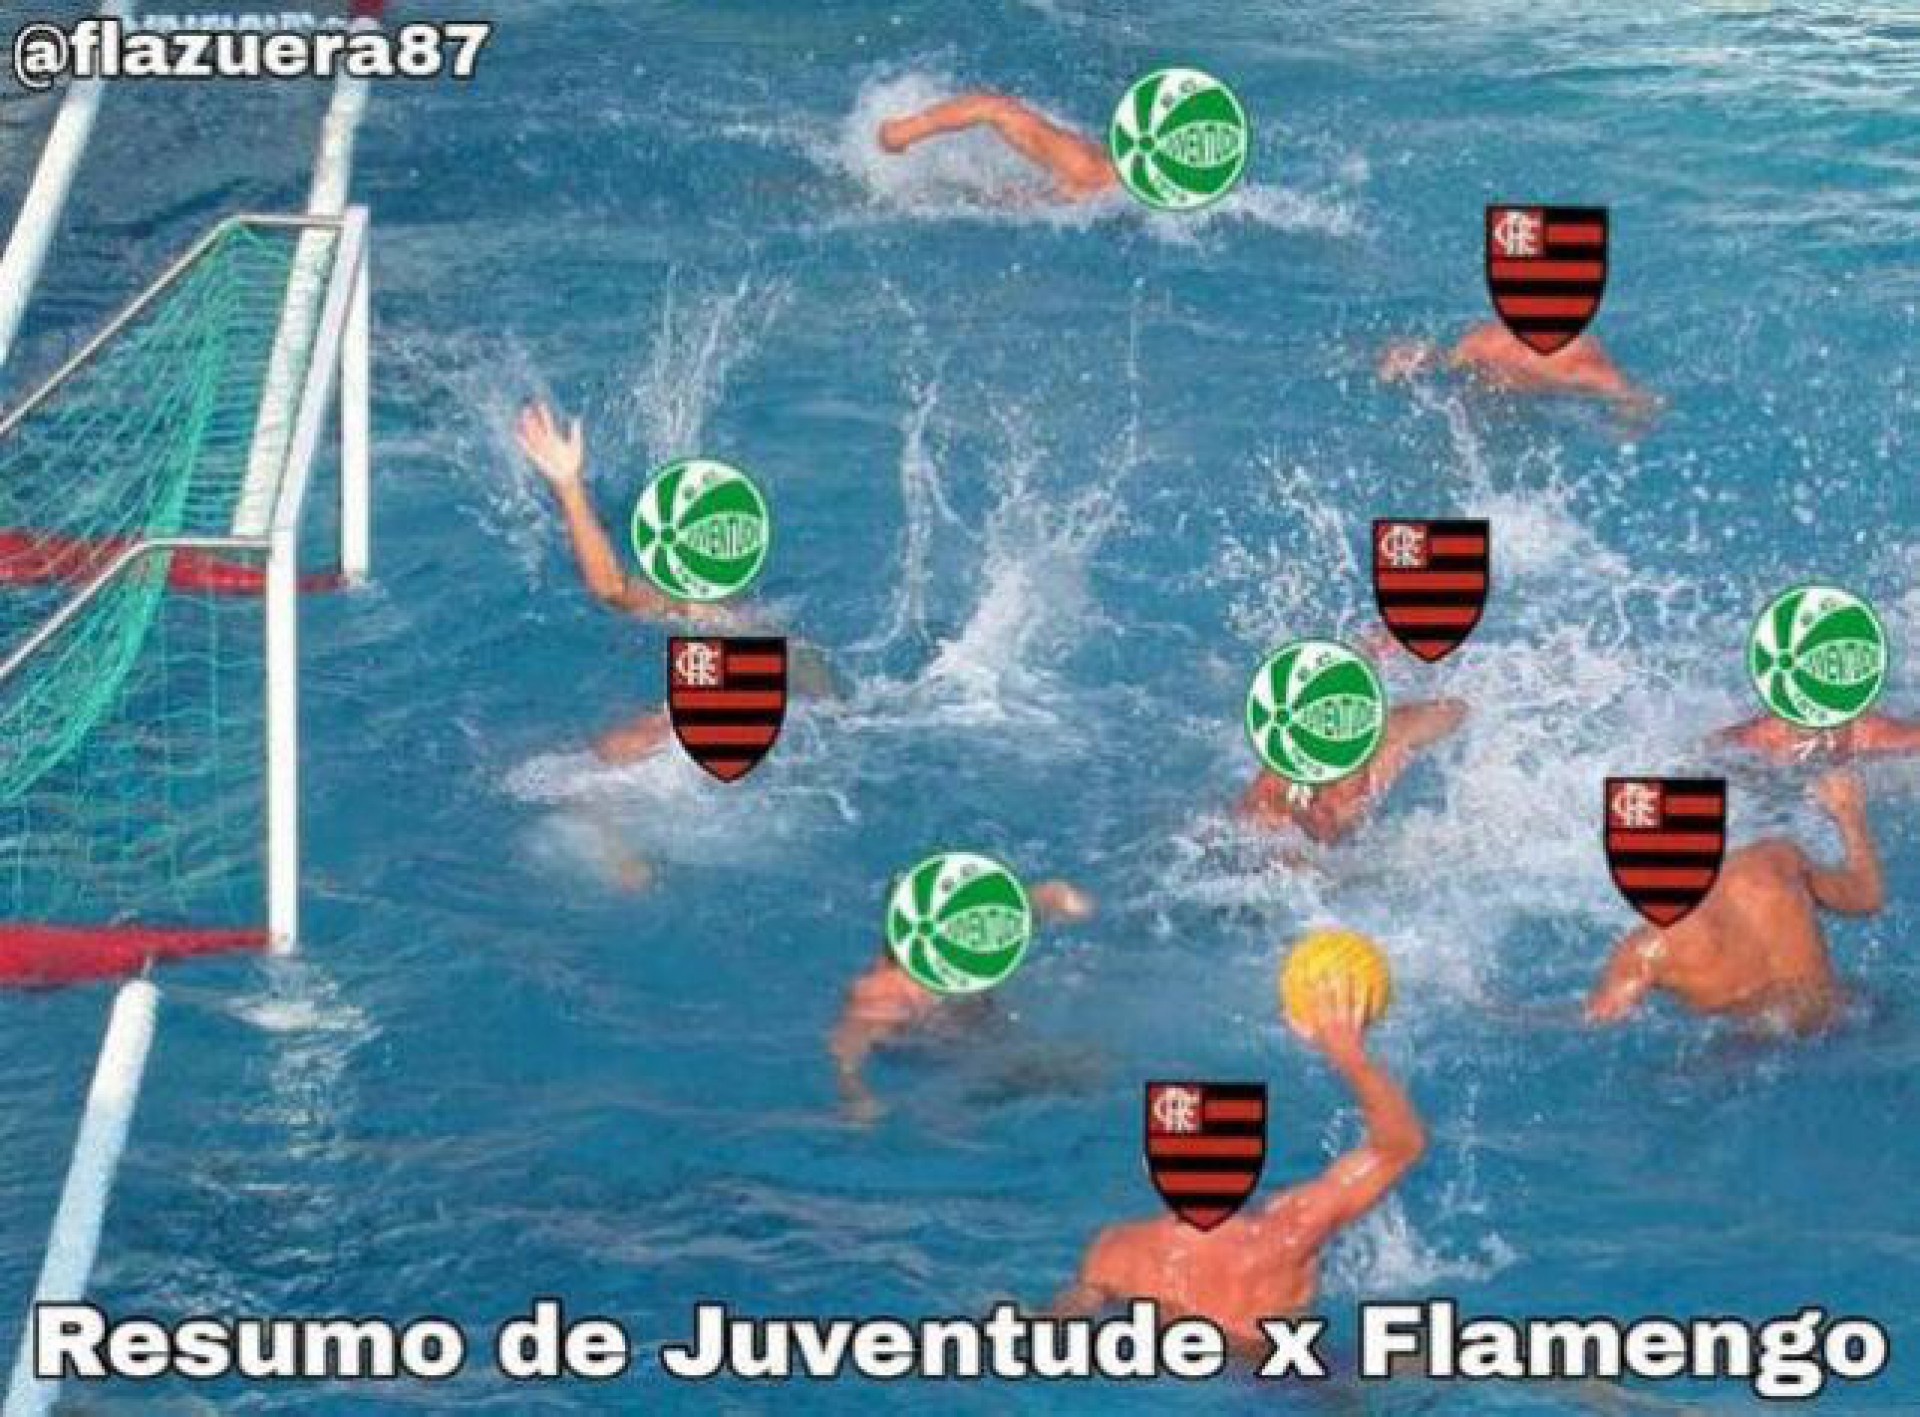 Gramado encharcado na derrota do Flamengo rende boas piadas na web; veja  memes!, Flamengo